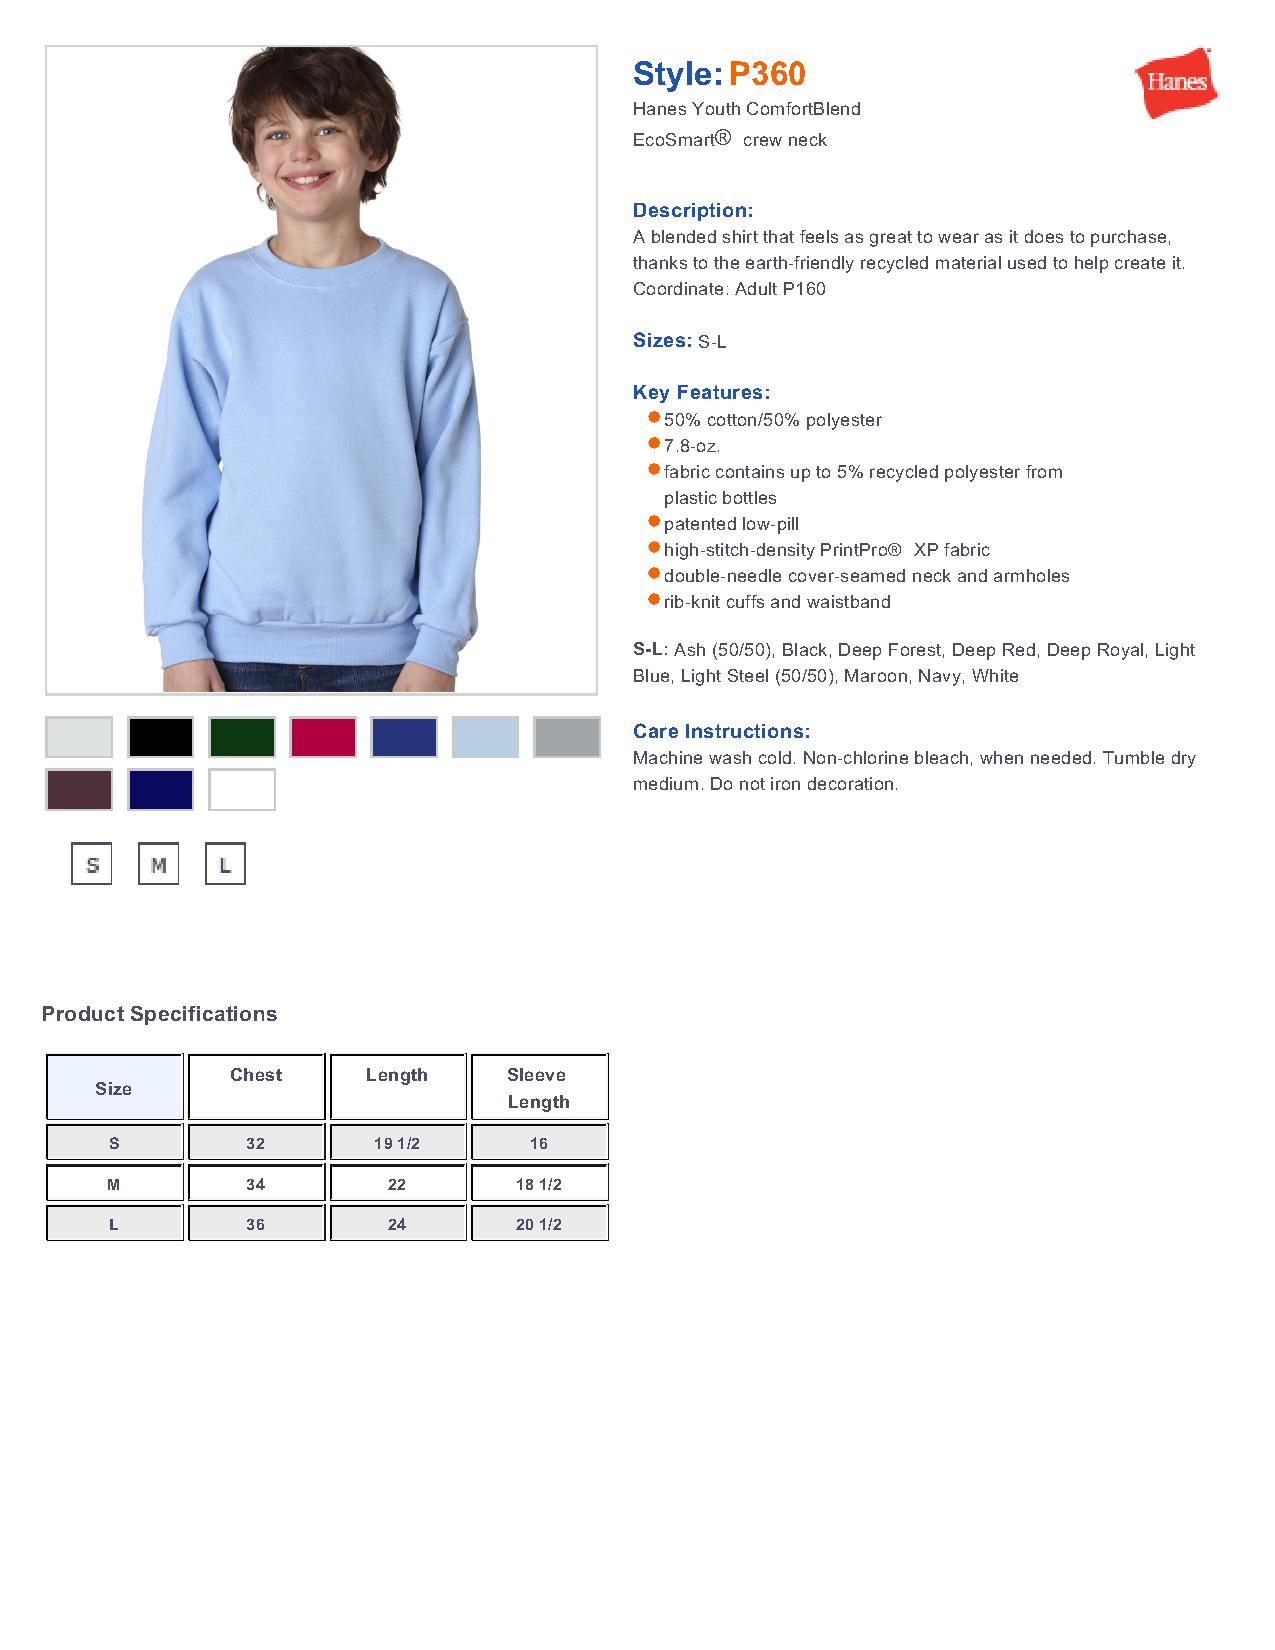 Hanes P360 - Youth EcoSmart® Crewneck Sweatshirt $8.70 - Sweatshirts